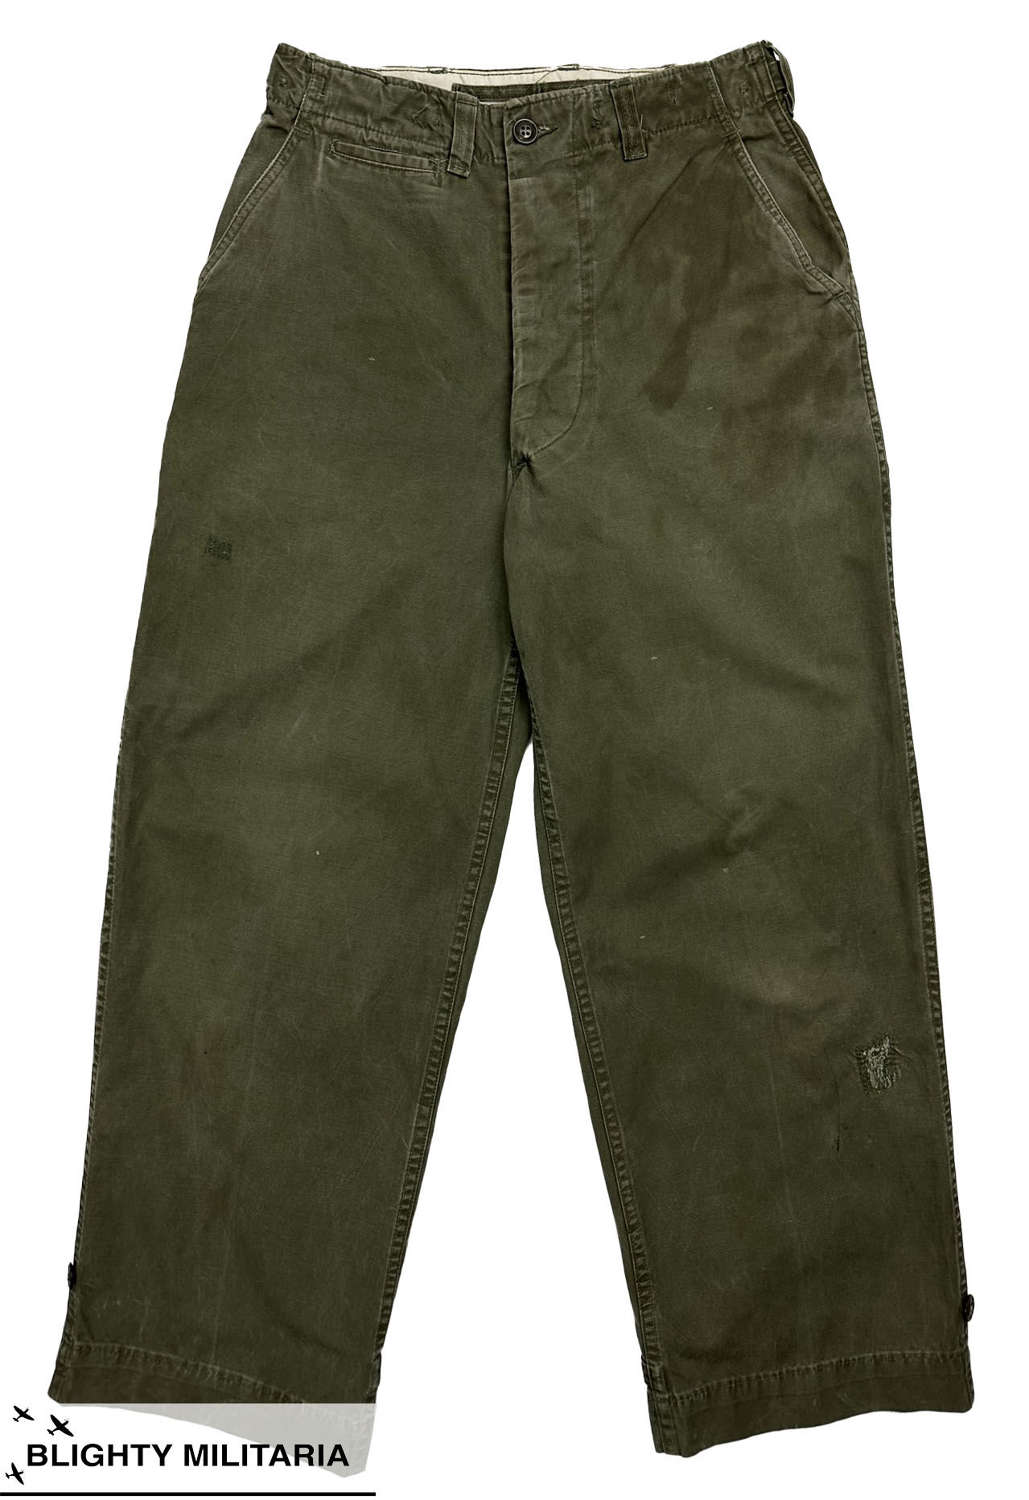 Original WW2 US Army M1943 Combat Trousers - Size 29 x 29